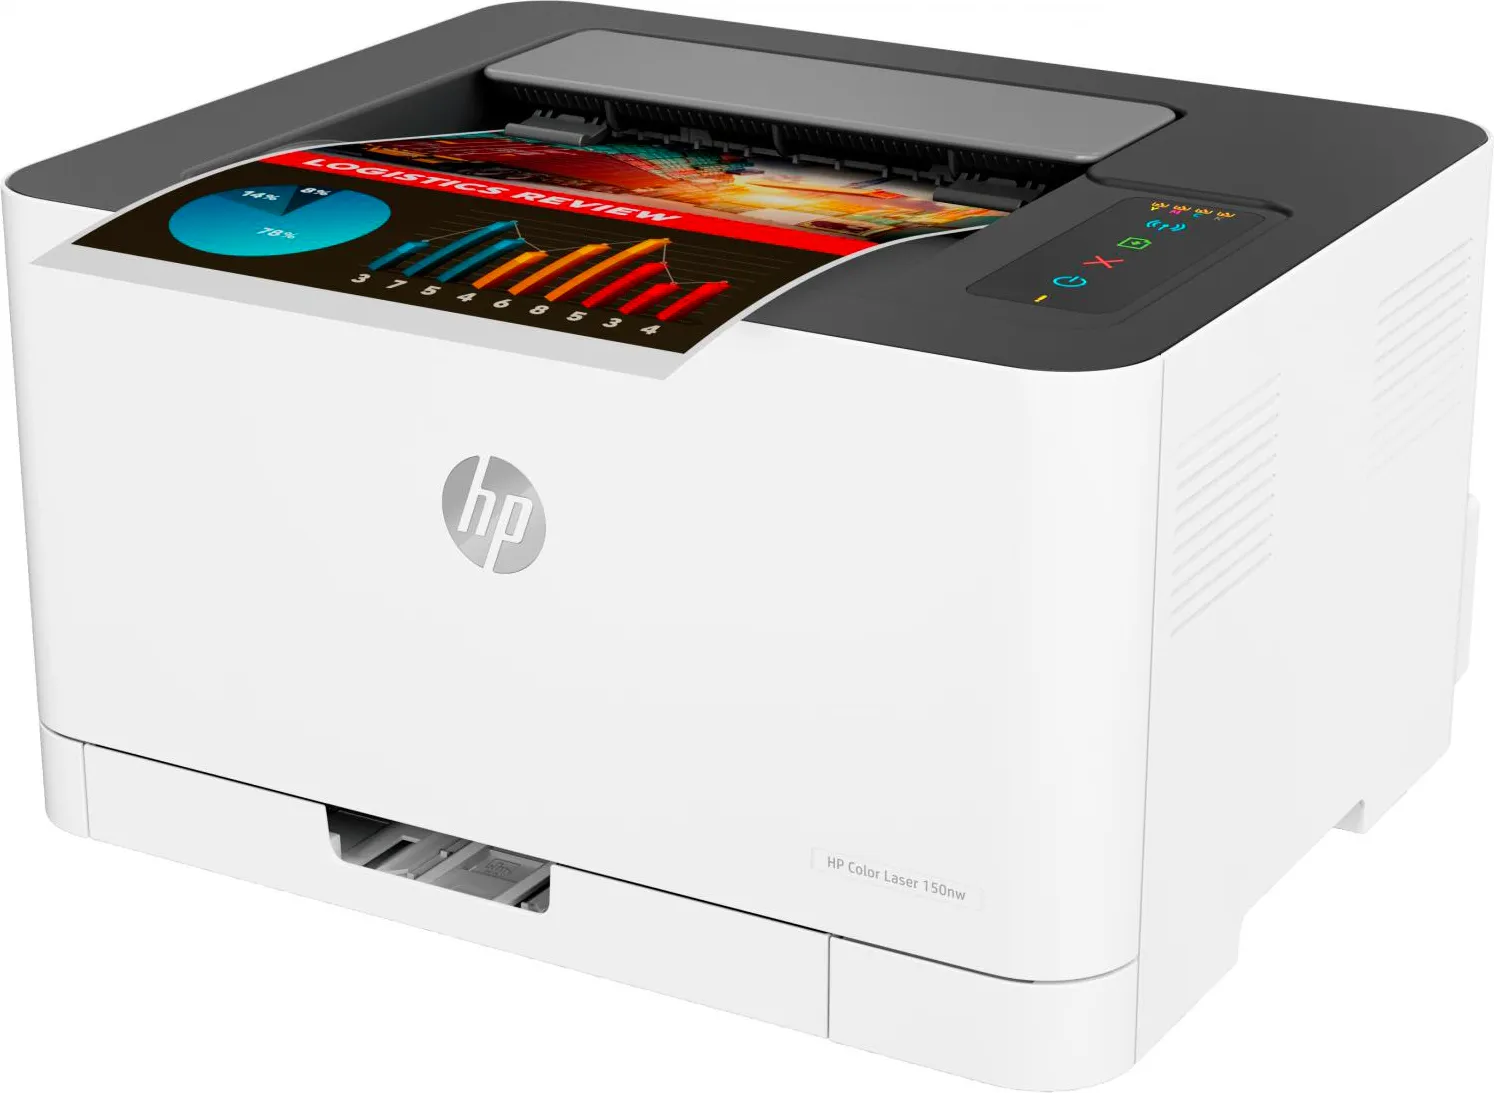 HP presenta la stampante laser più piccola al mondo